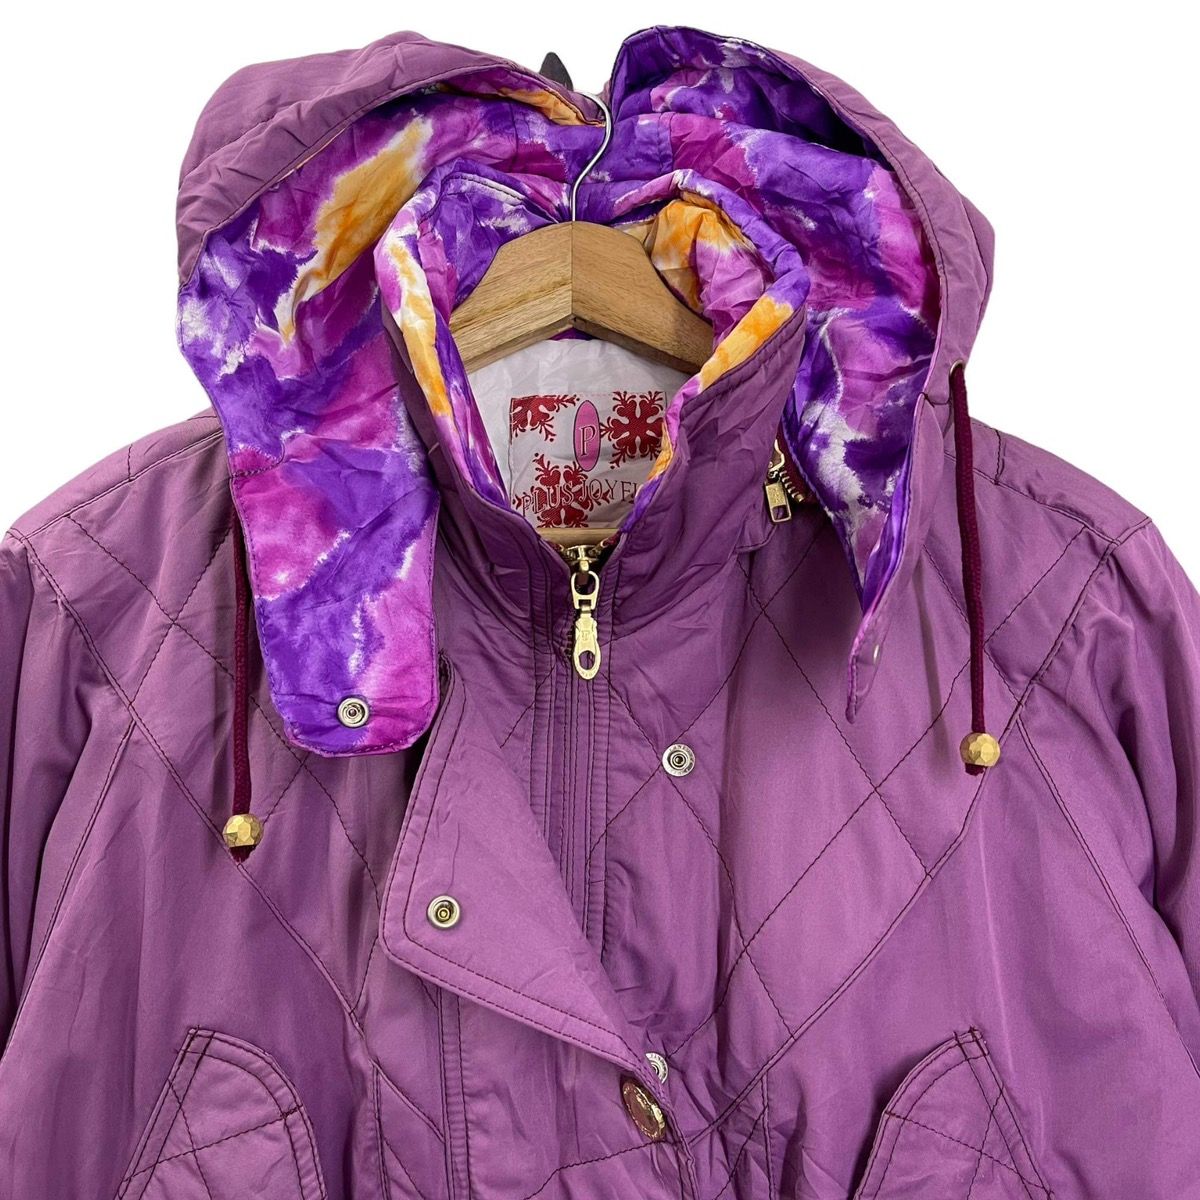 Vintage - LADIES💥 Plus Joy Ful Hoodies Ski Jacket Size M - 4